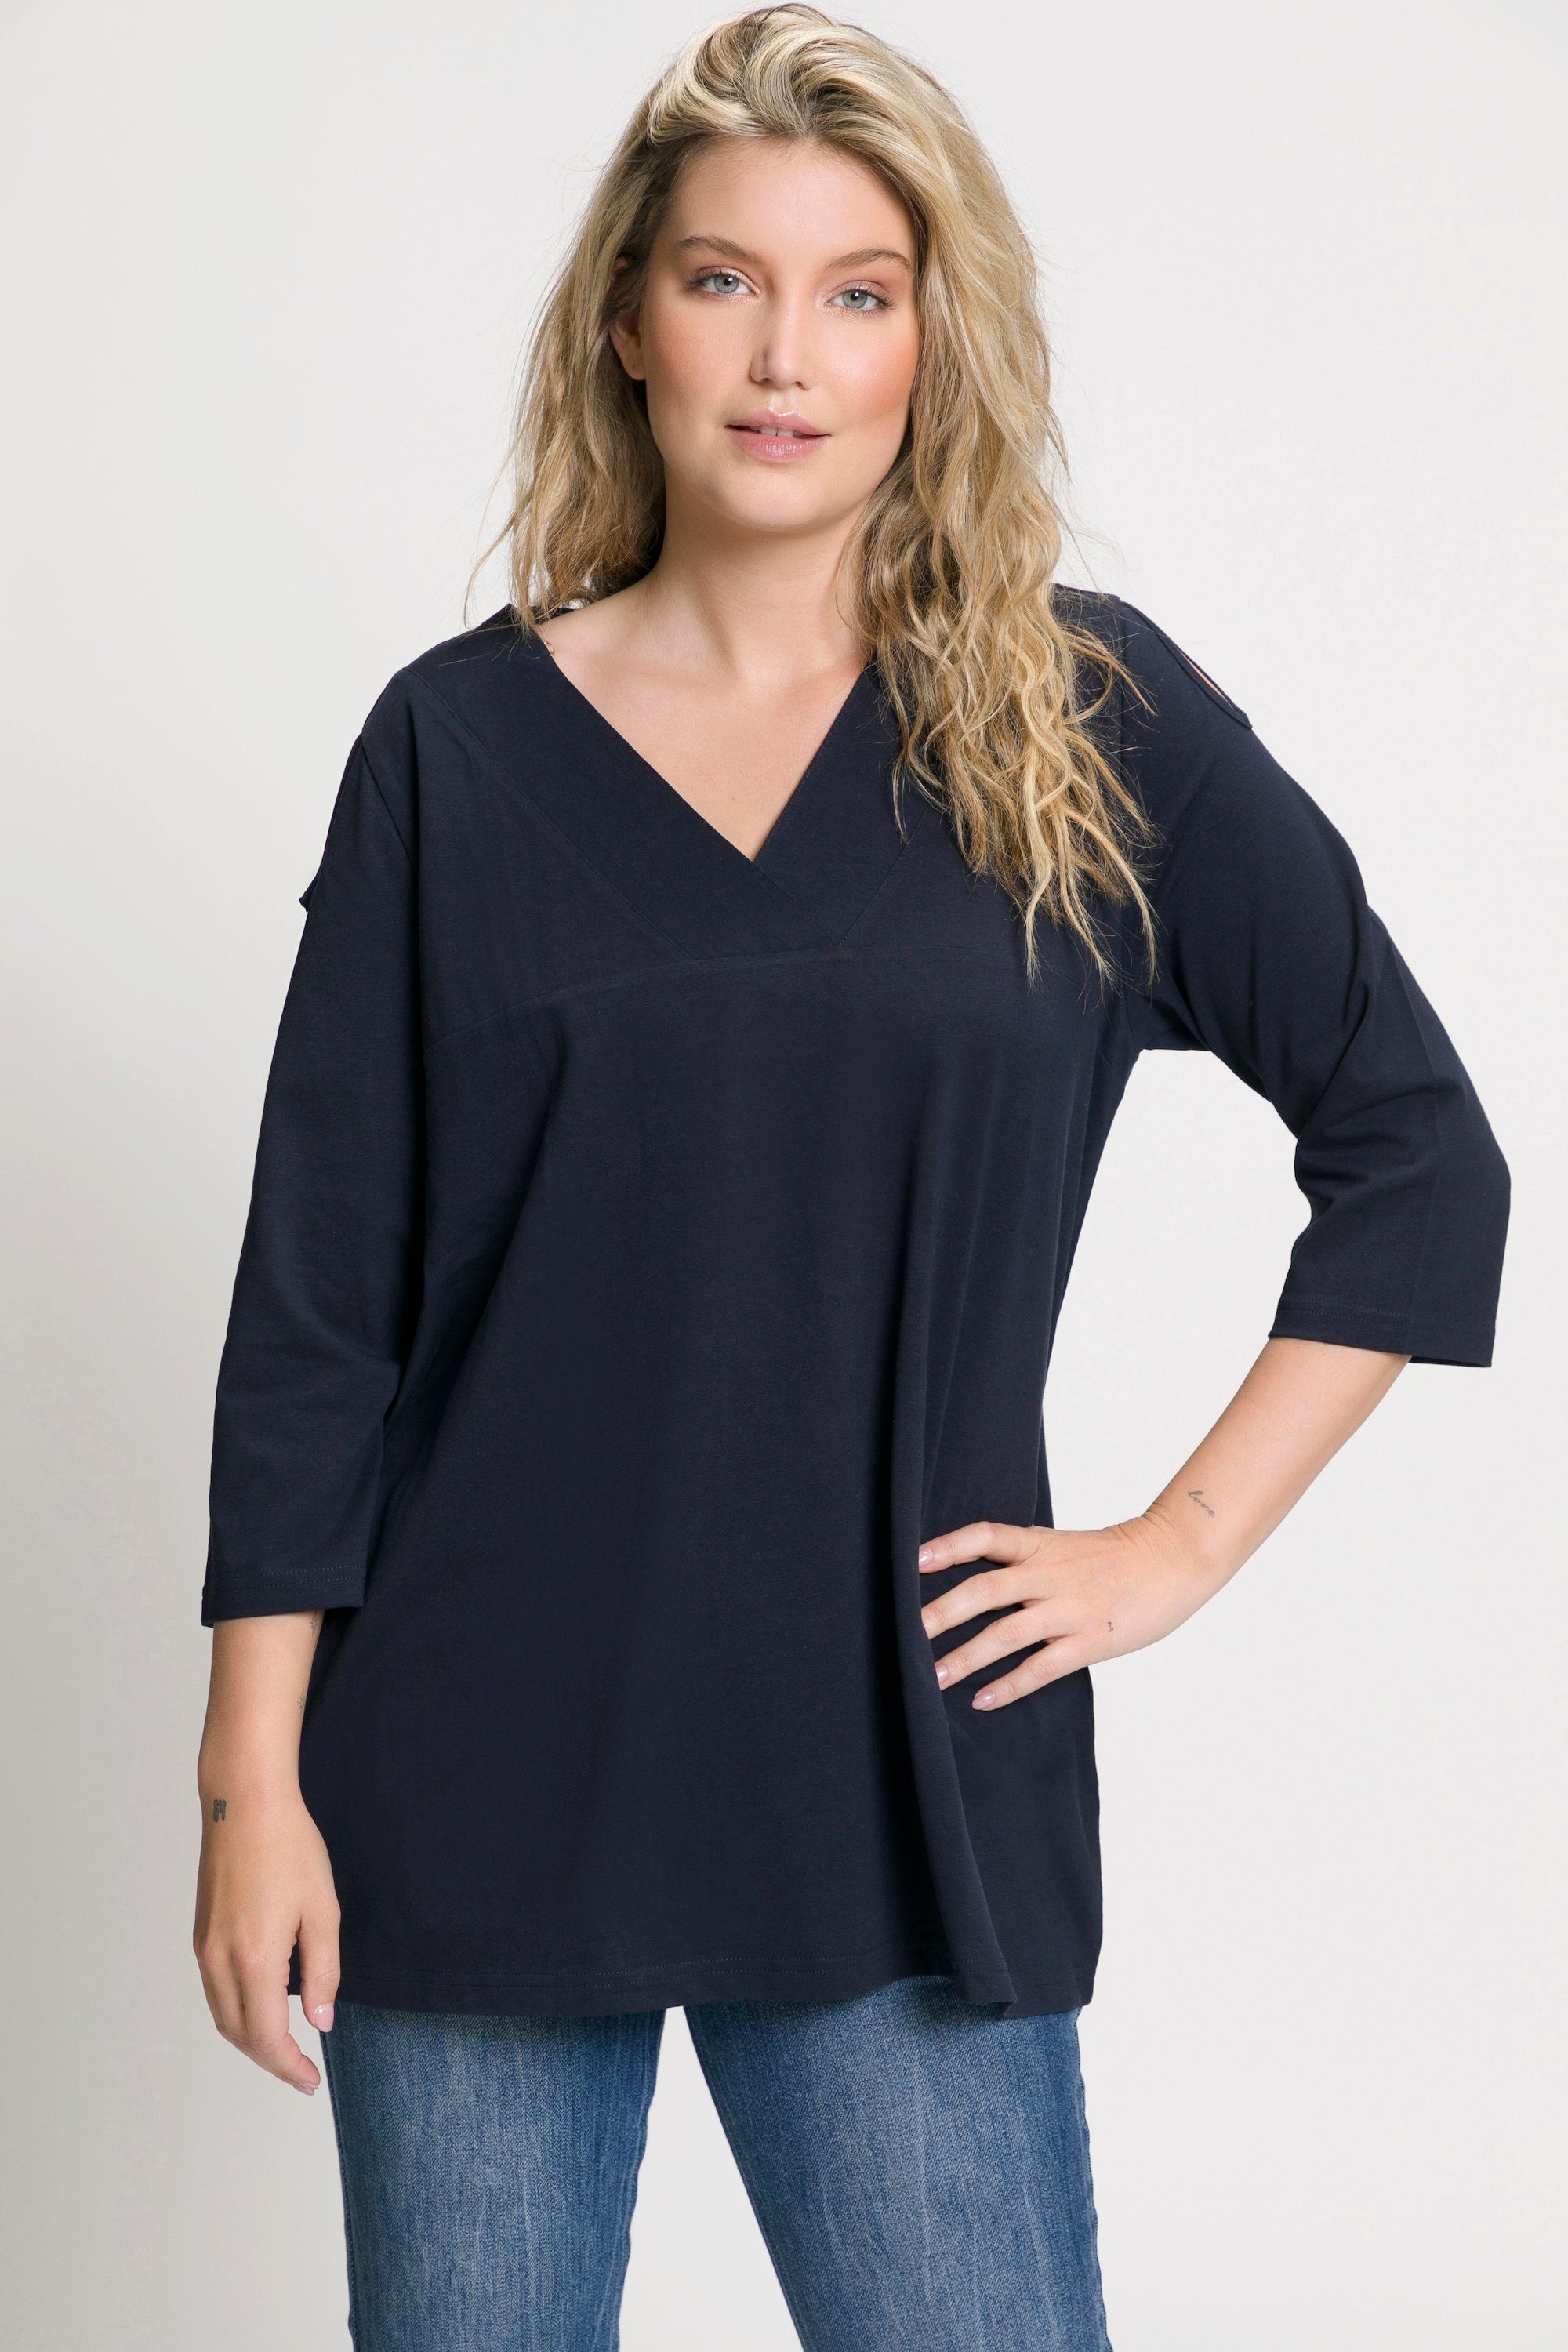 Popken Ulla V-Ausschnitt ausgeschnittene Schulter T-Shirt Longsleeve marine